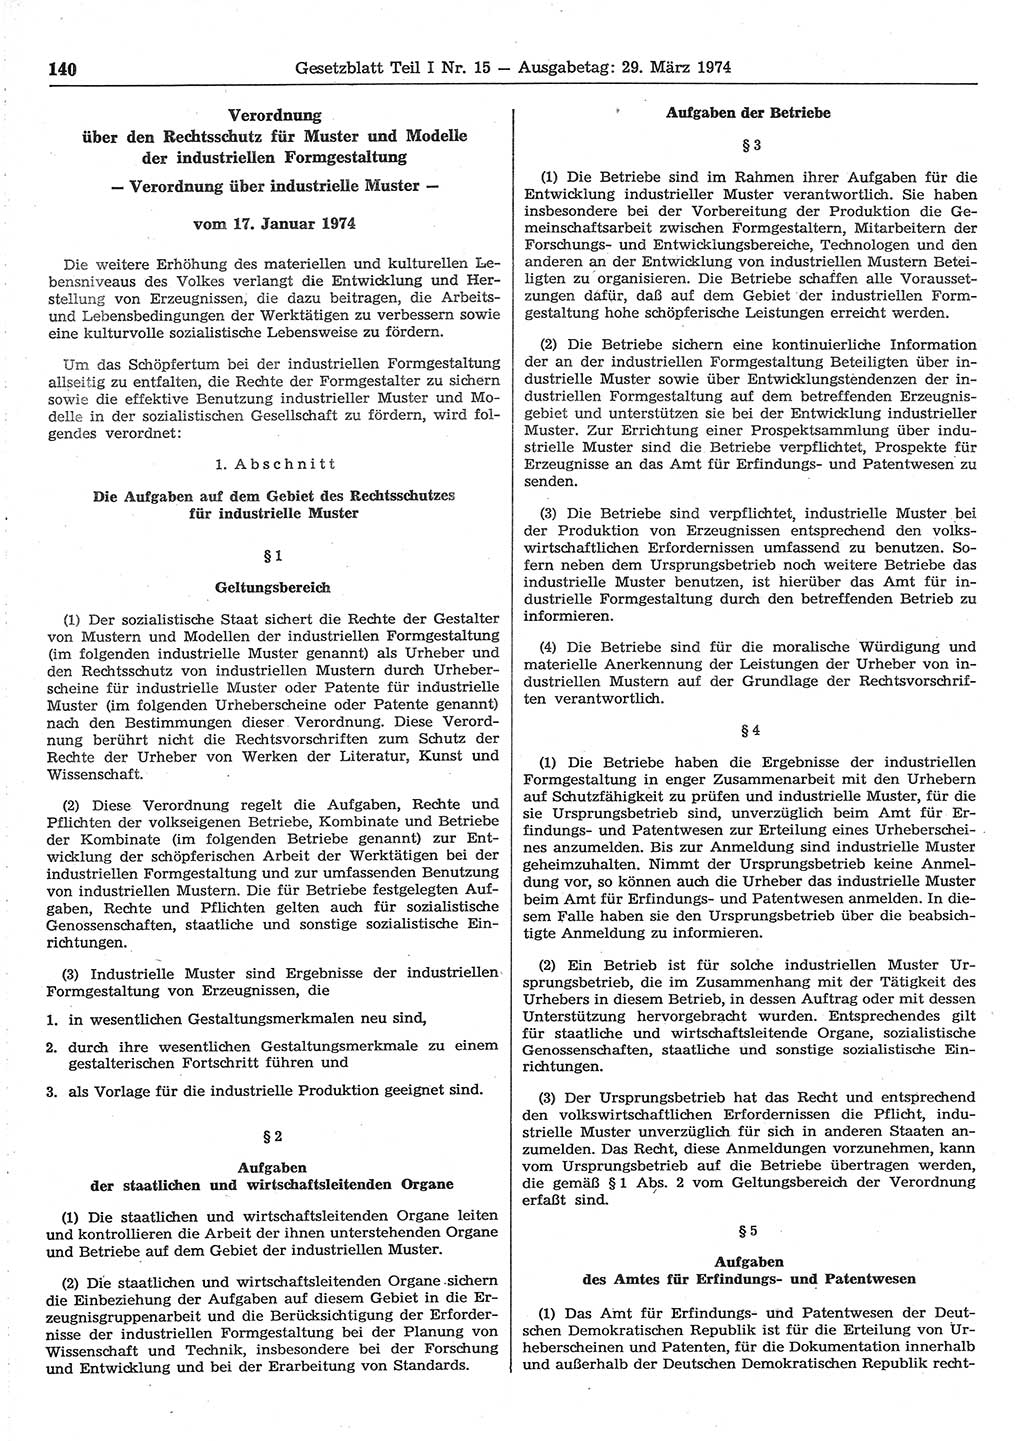 Gesetzblatt (GBl.) der Deutschen Demokratischen Republik (DDR) Teil Ⅰ 1974, Seite 140 (GBl. DDR Ⅰ 1974, S. 140)